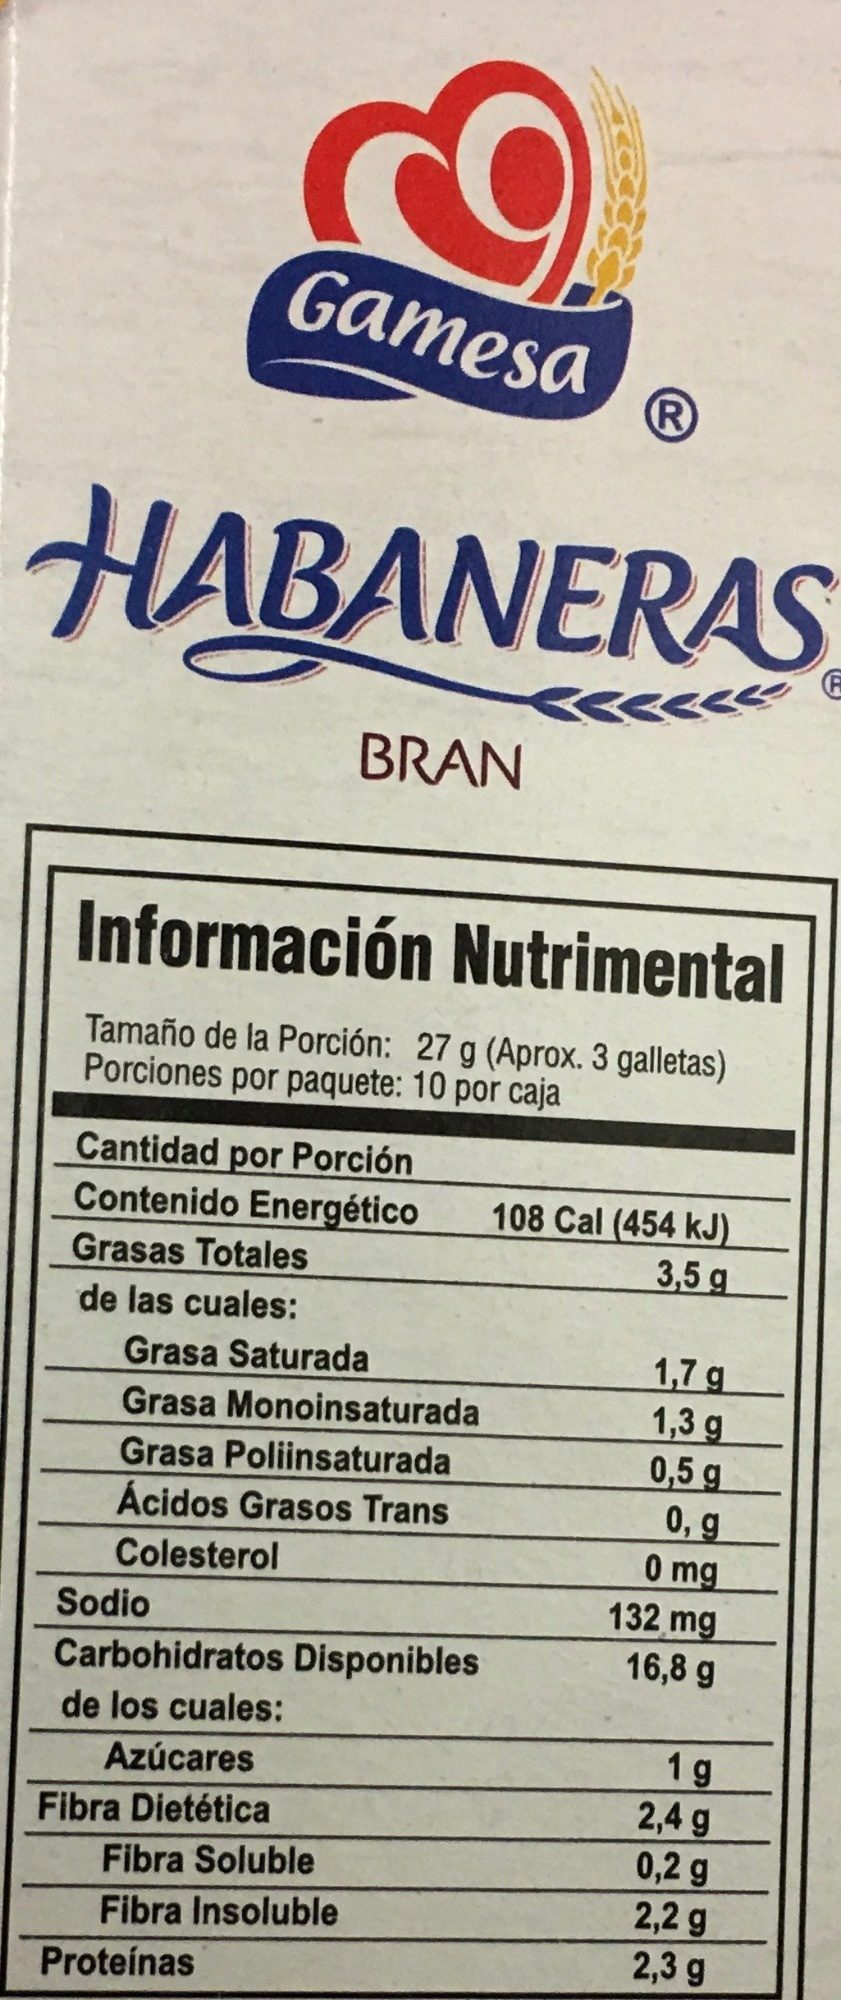 Habaneras Bran - Información nutricional